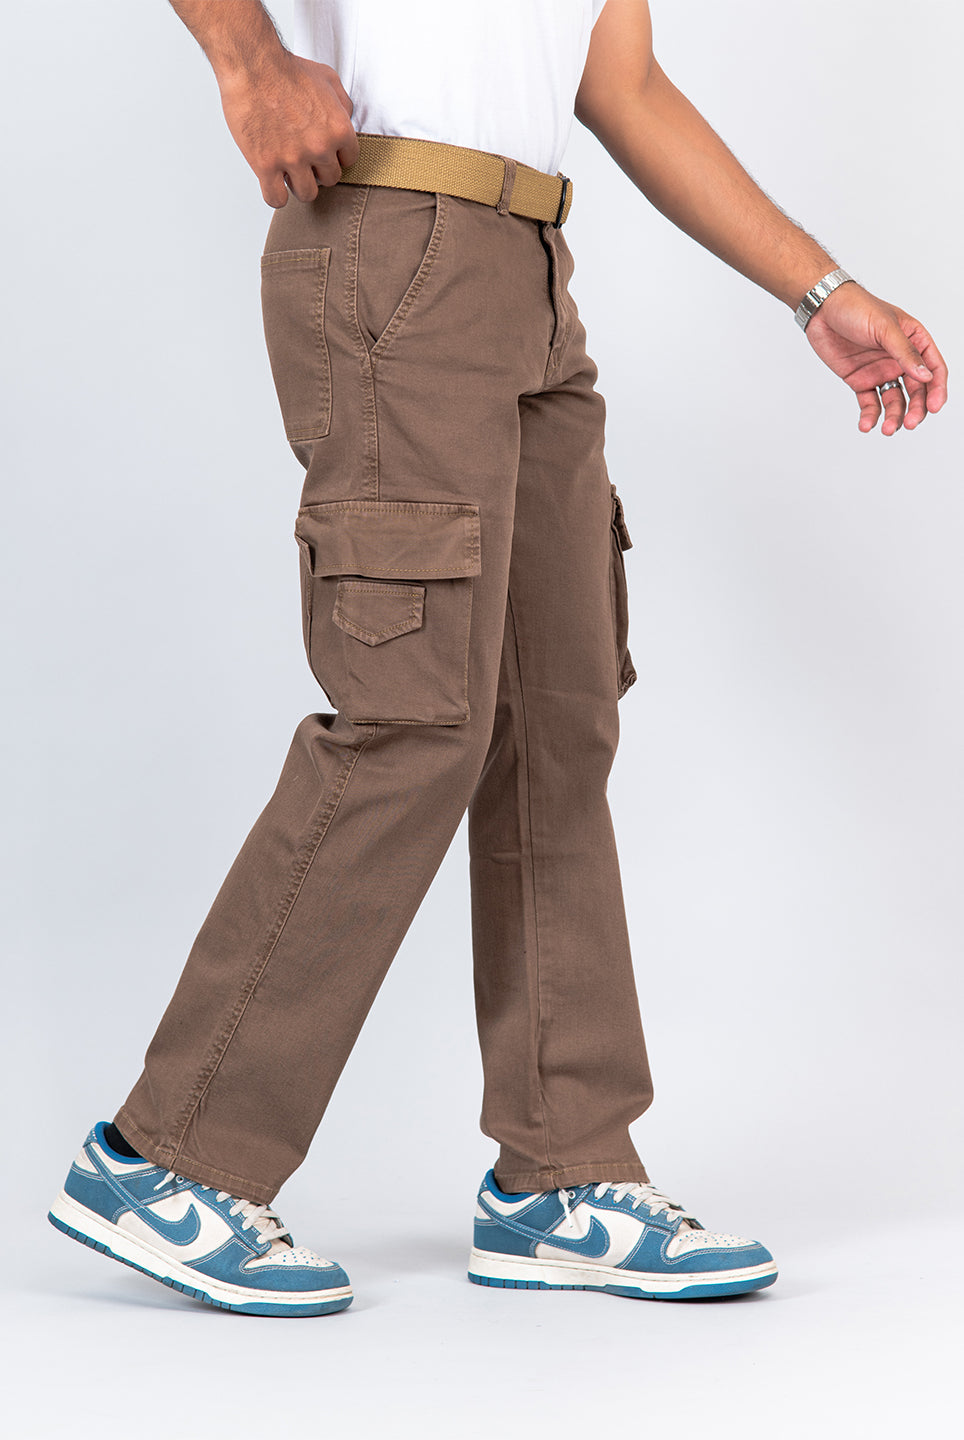 cargo pants for men 